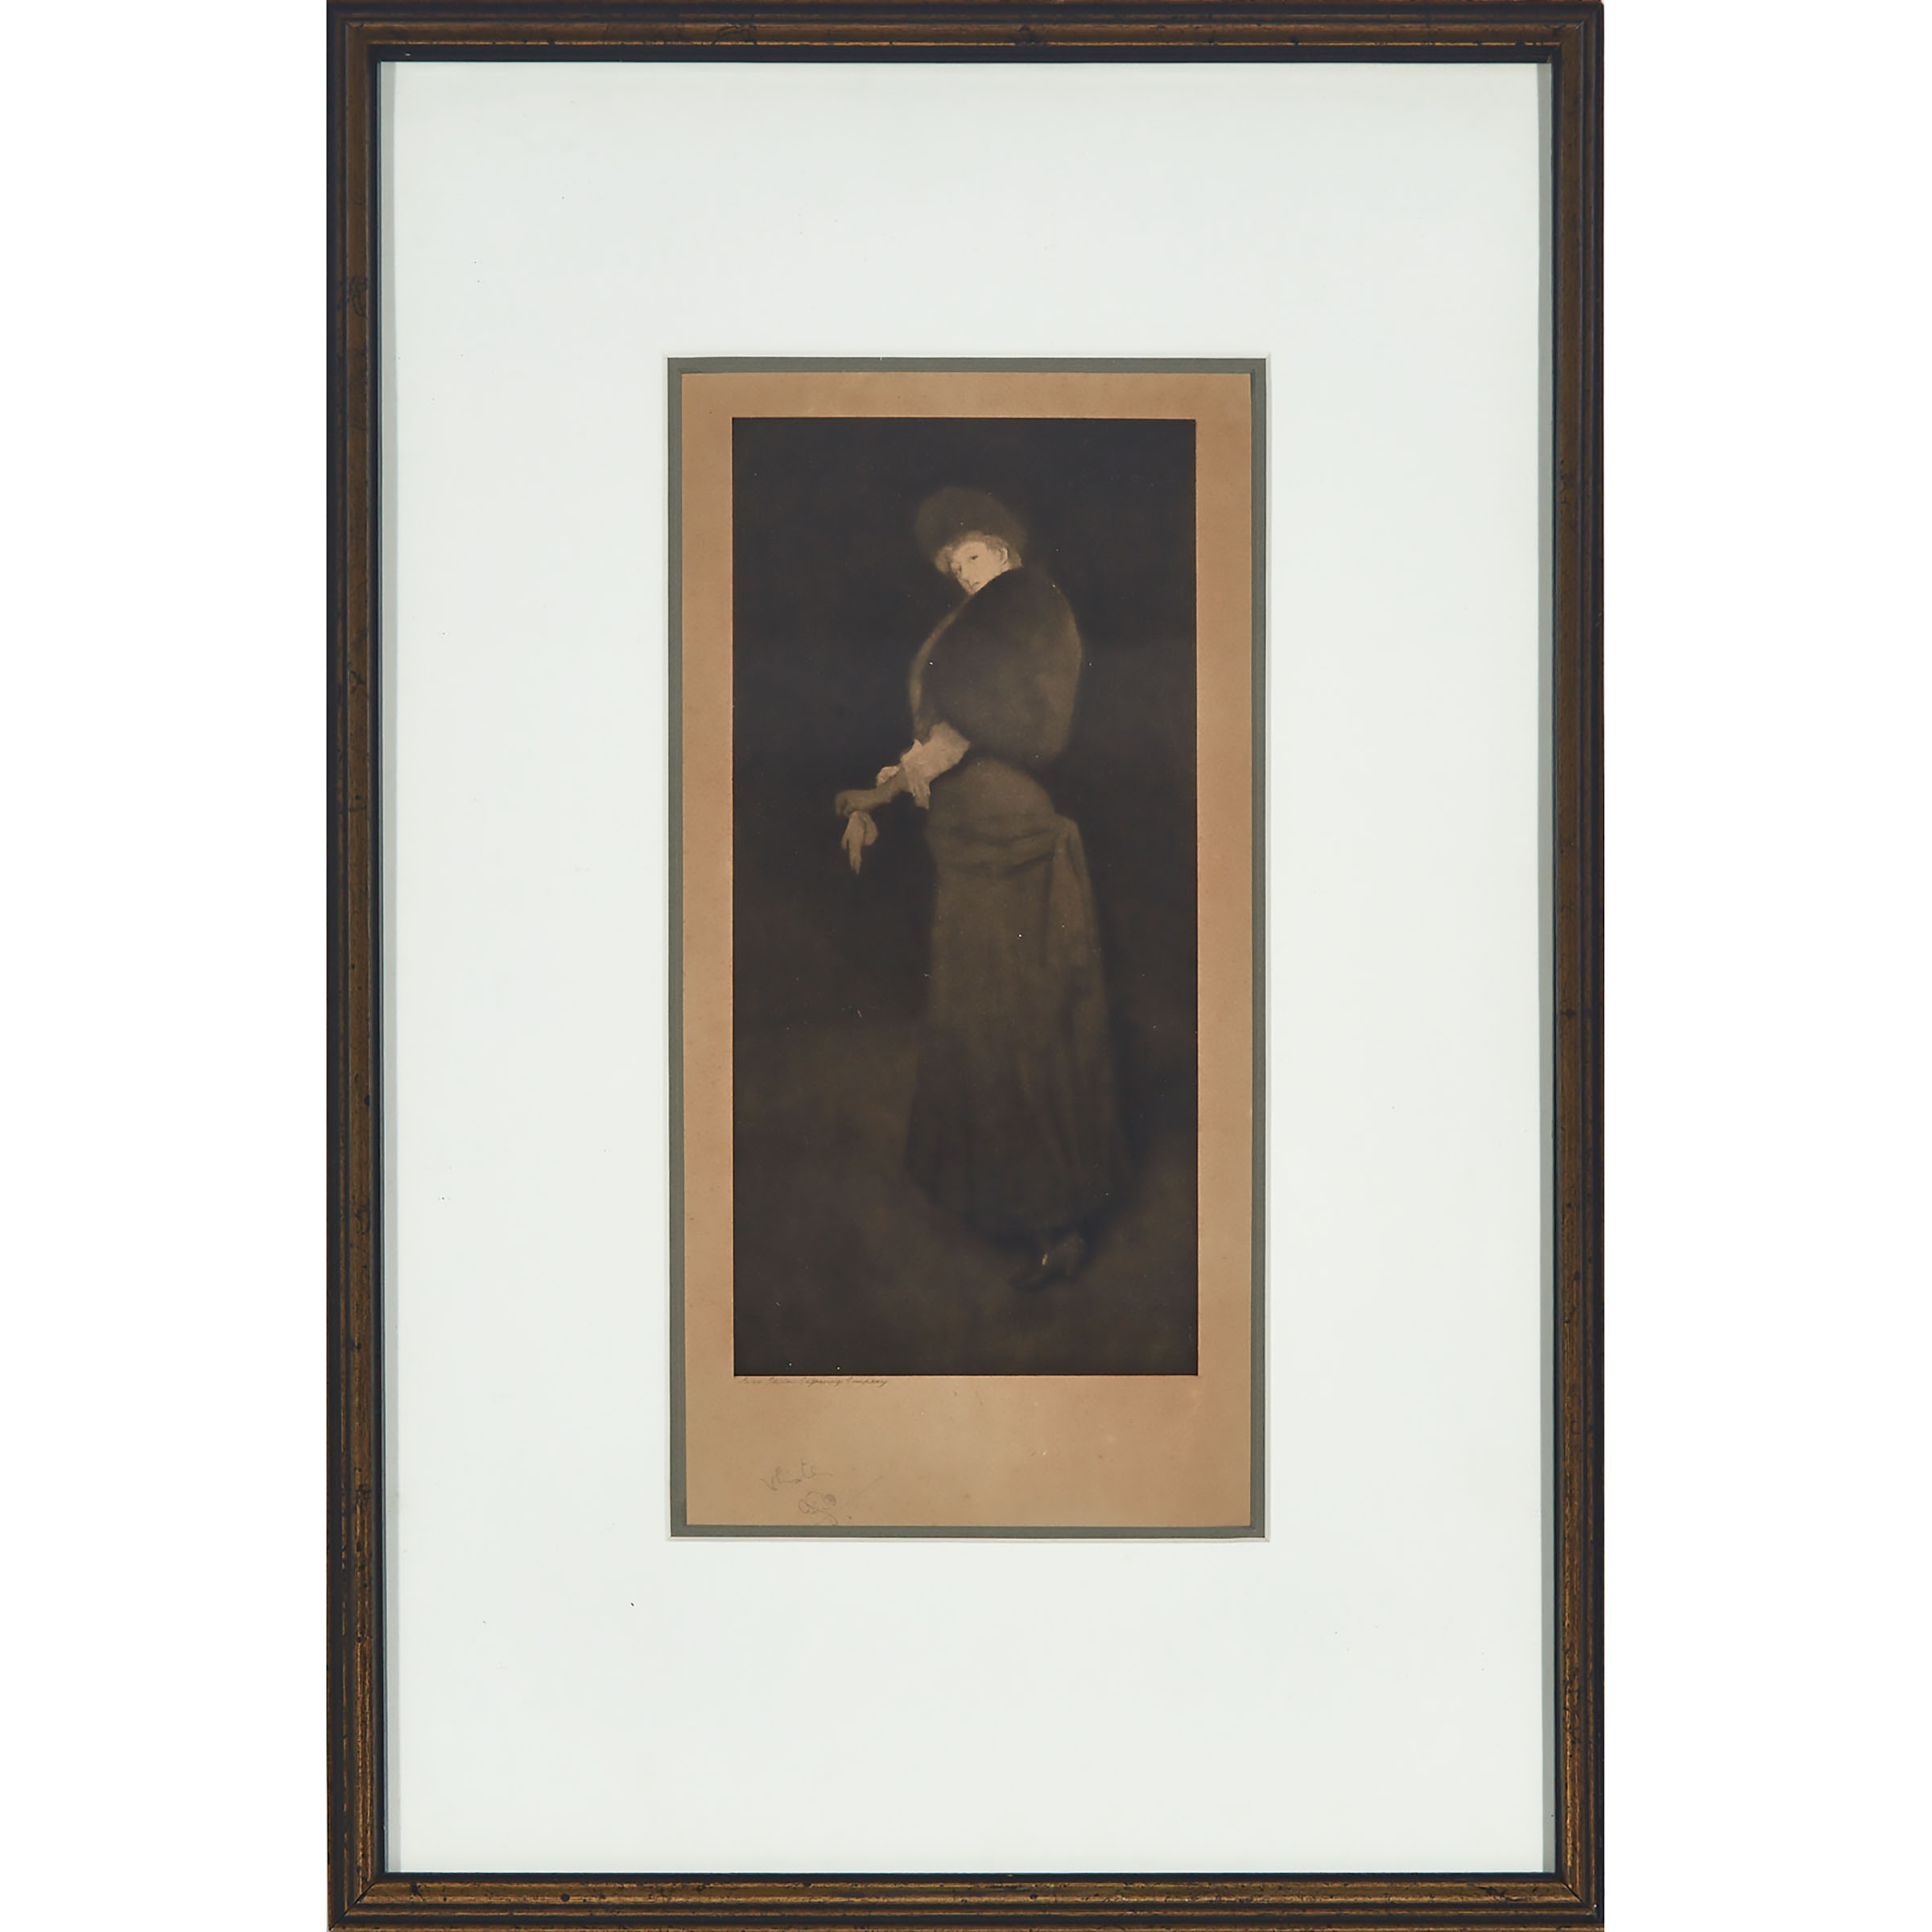 After James Abbott McNeill Whistler (1834-1903)